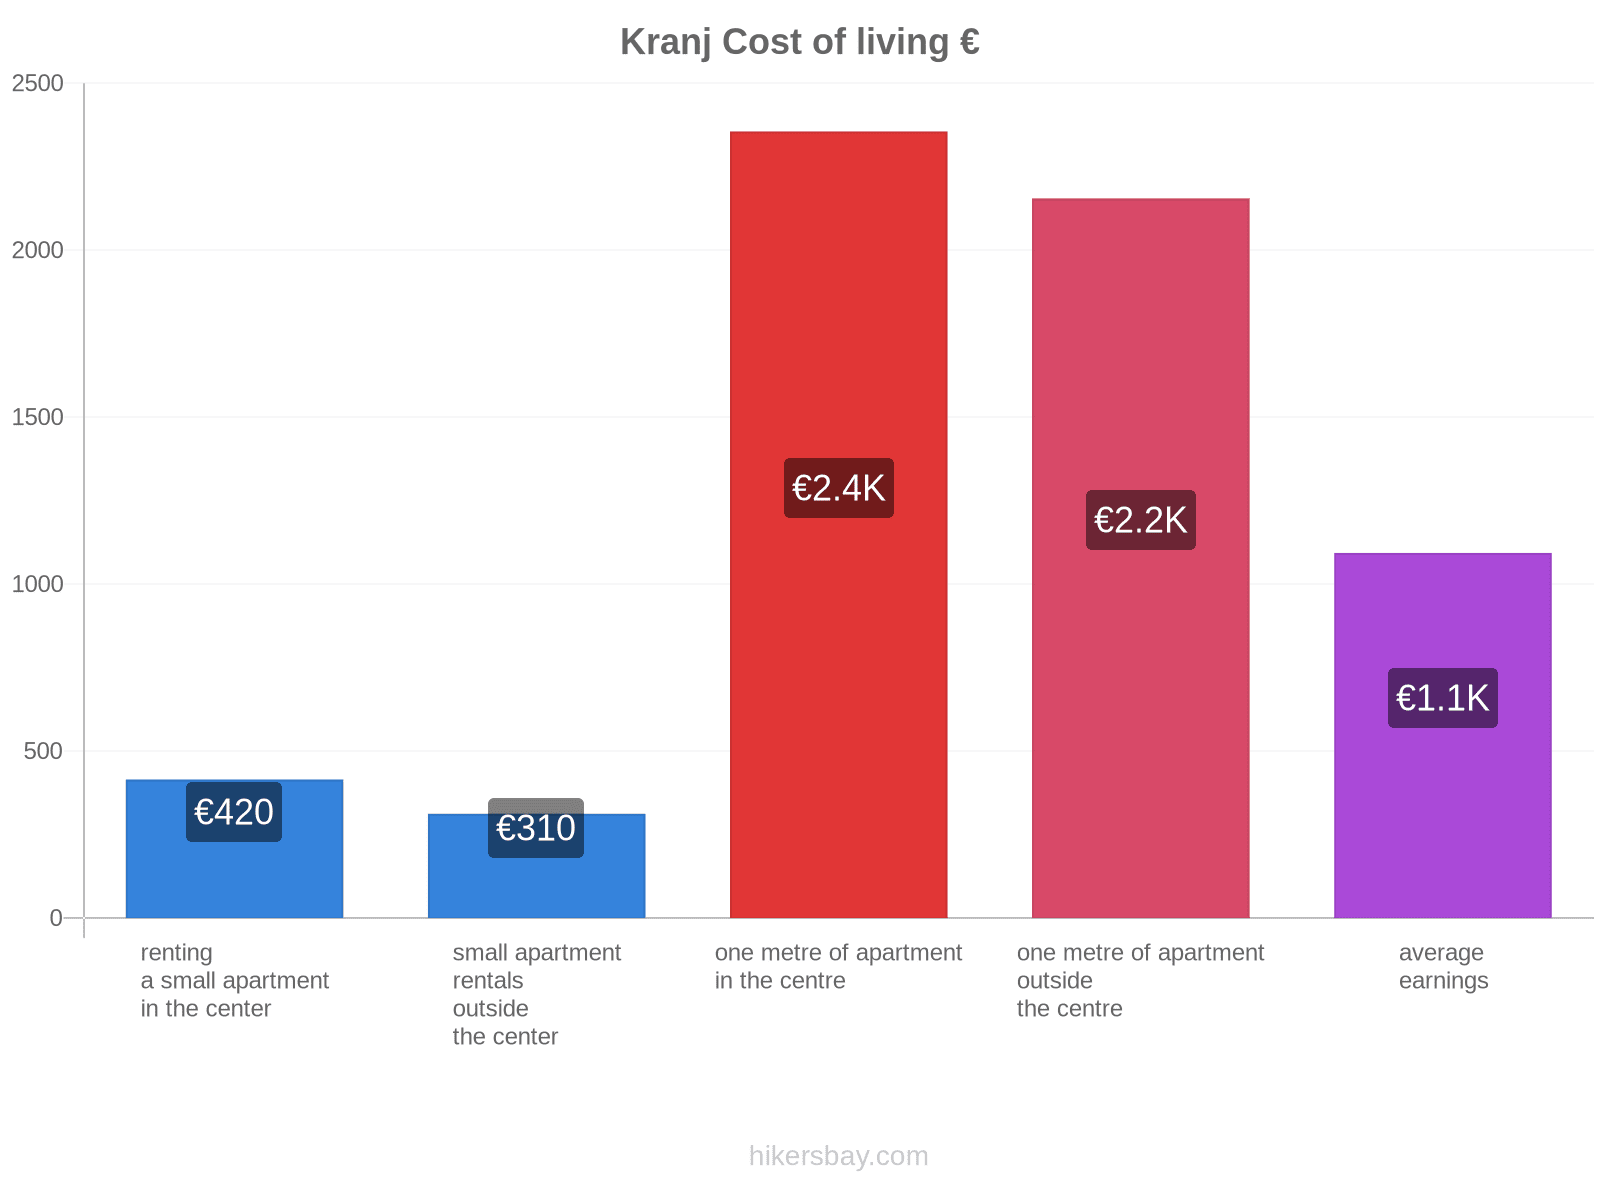 Kranj cost of living hikersbay.com